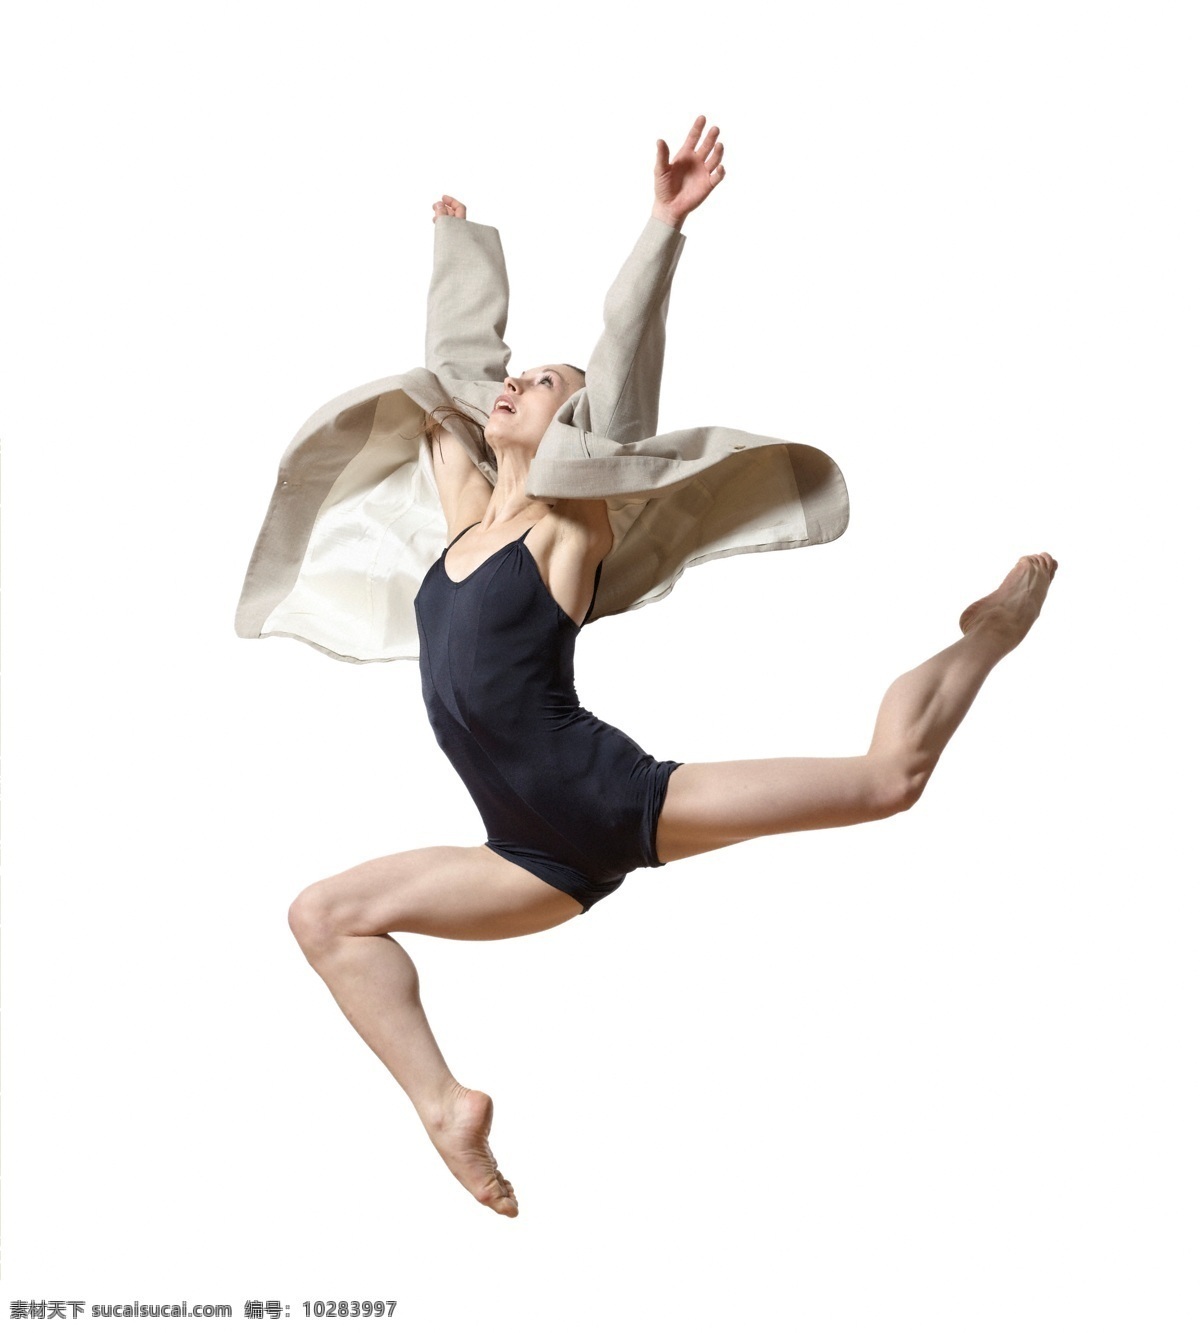 飞翔舞者 迎风展翅舞姿 阿拉贝斯克 arabespue 现代舞 优美 女性 人体 美腿 玉足 舞蹈音乐 文化艺术